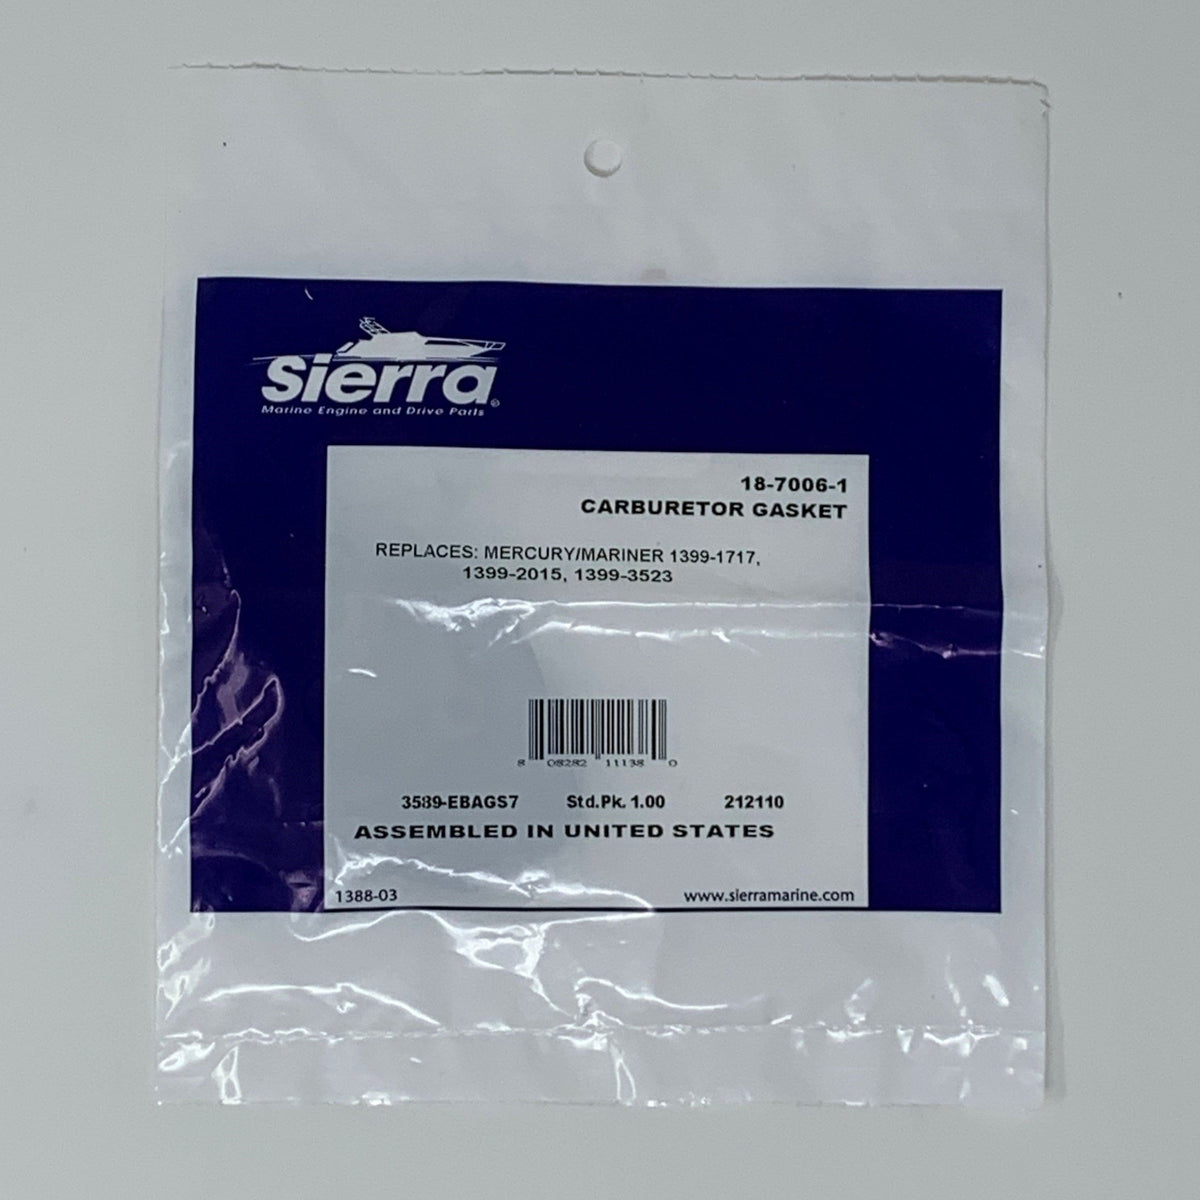 Sierra Marine Carburetor Gasket 18-7006-1